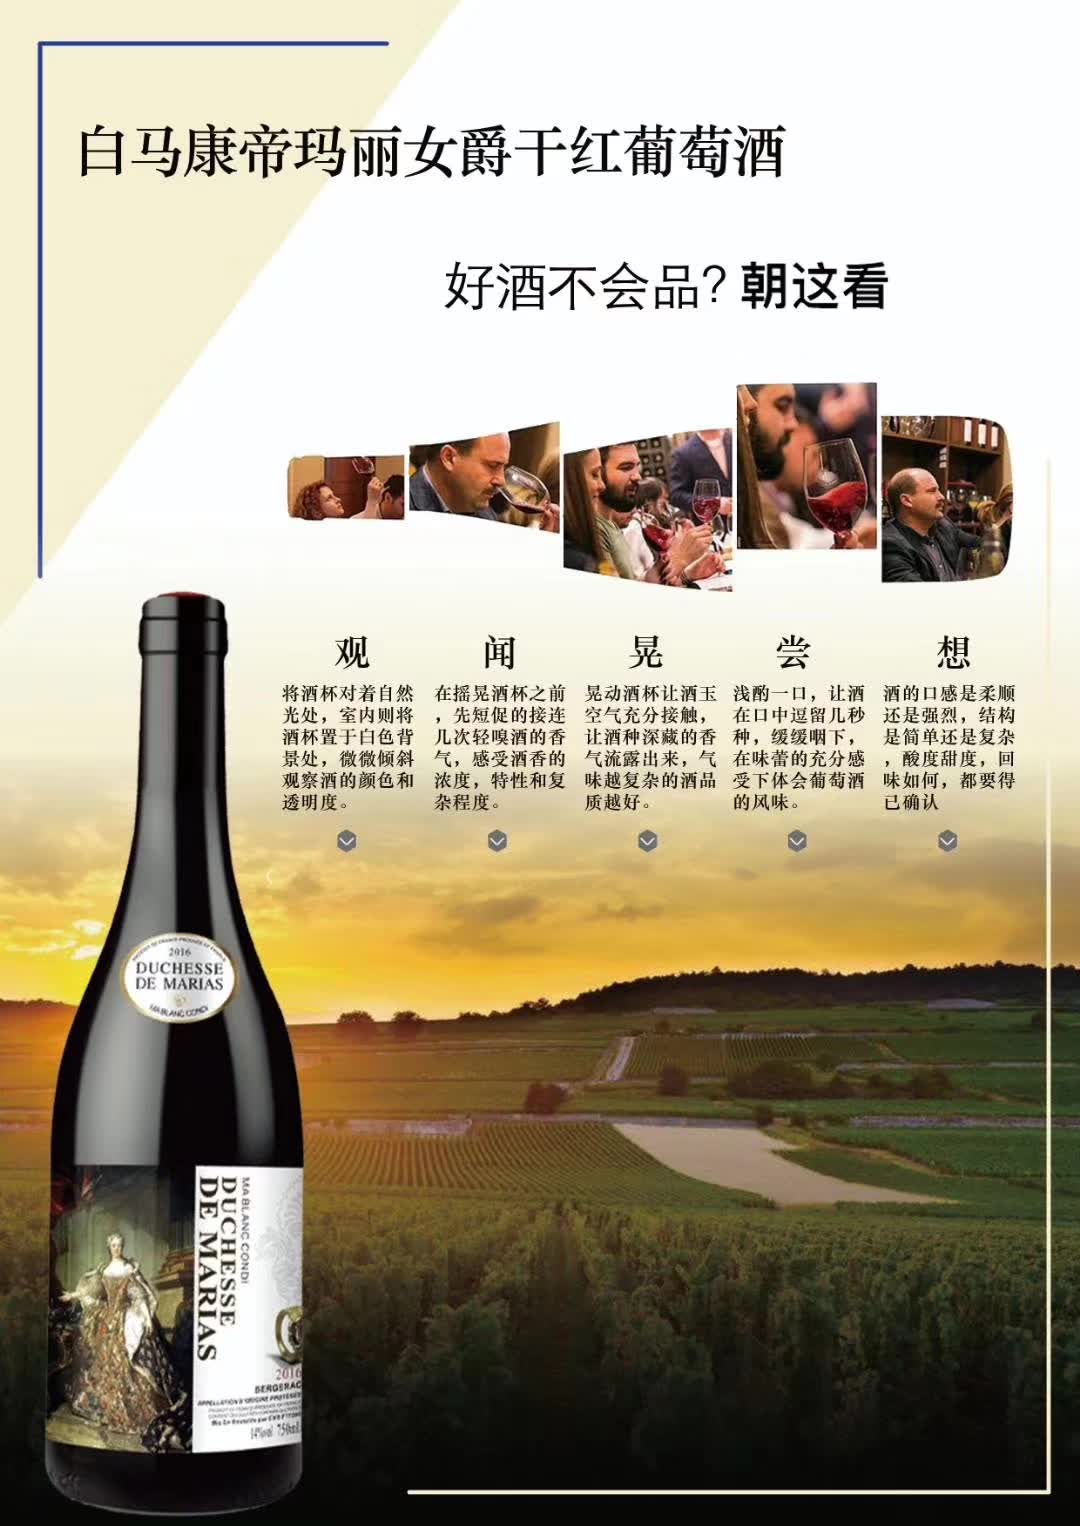 上海万耀白马康帝系列玛丽女爵法国贝尔热拉克葡萄酒代理加盟混酿葡萄酒